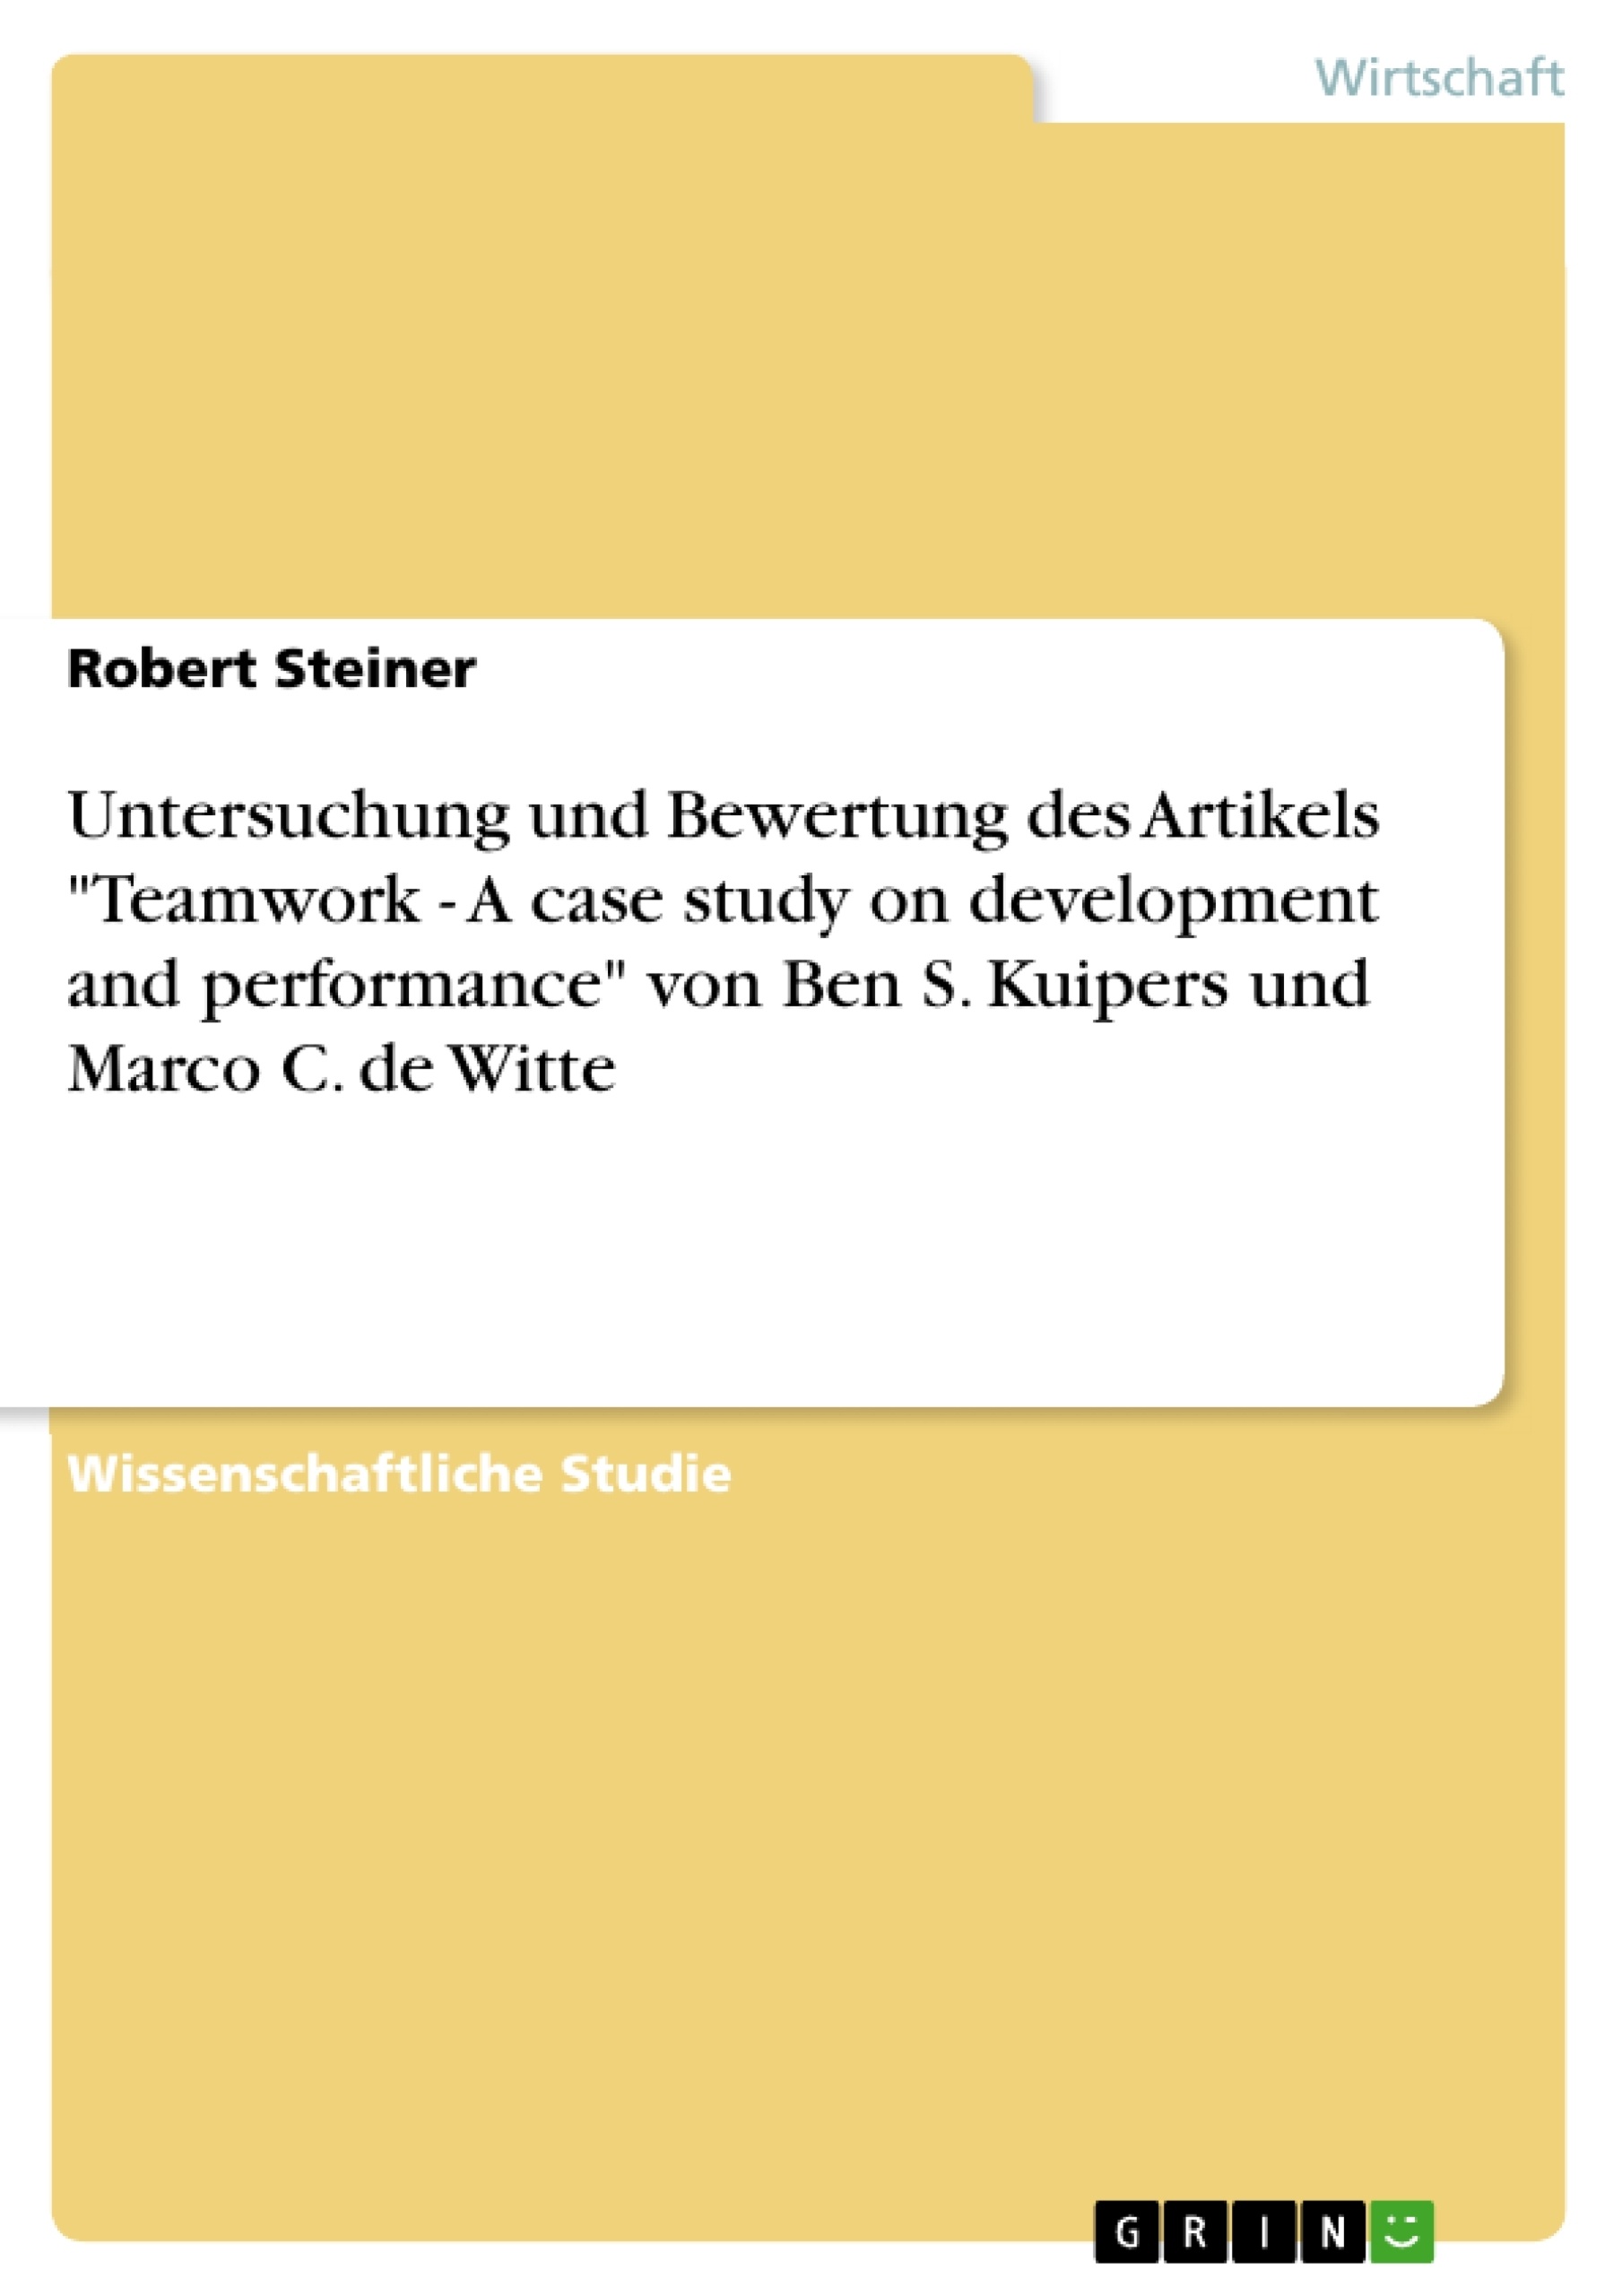 Titel: Untersuchung und Bewertung des Artikels "Teamwork - A case study on development and performance" von Ben S. Kuipers und Marco C. de Witte